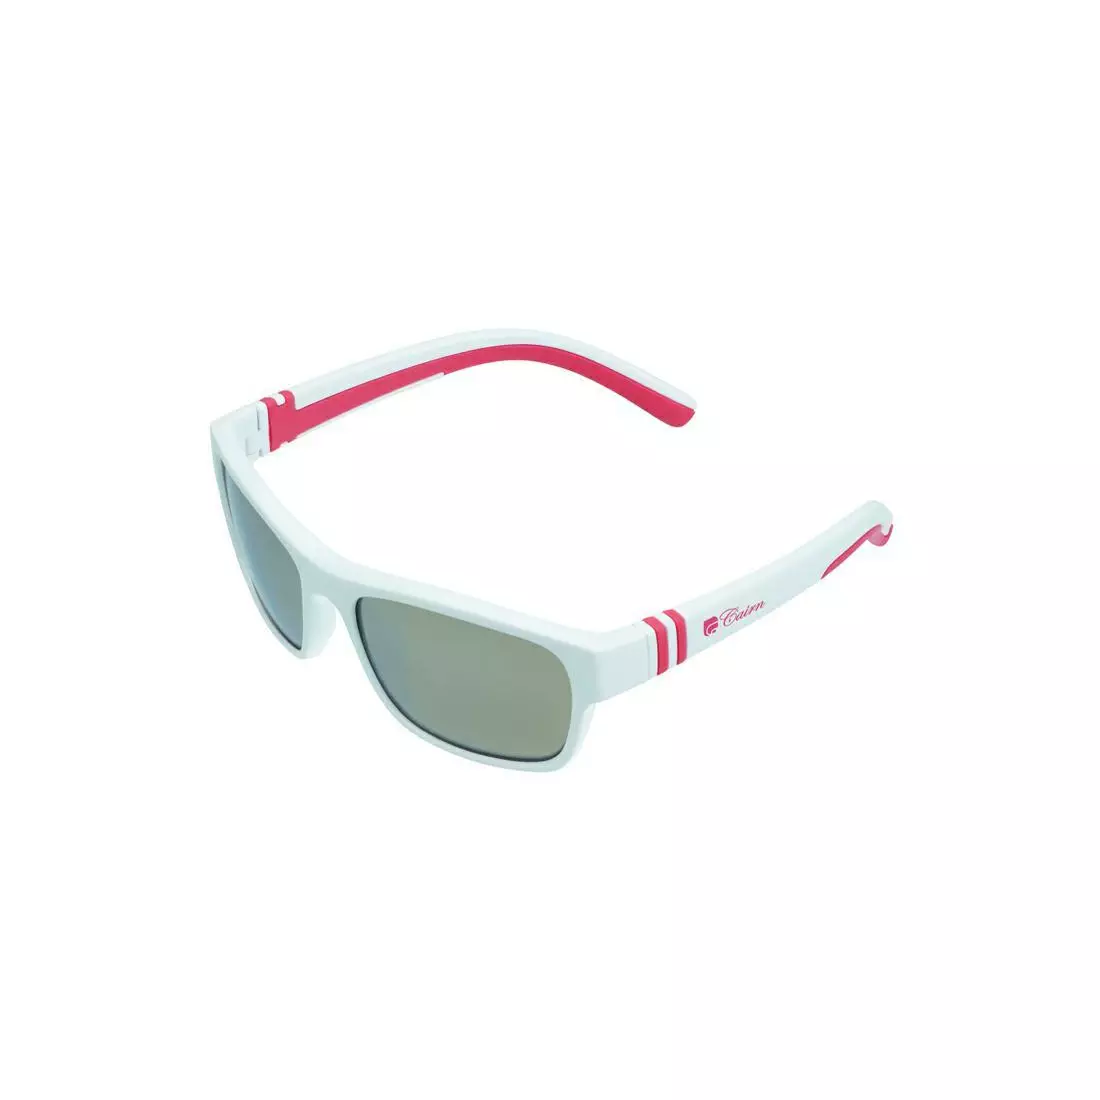 CAIRN children's sports glasses KIWI J white/pink JLKIWI101